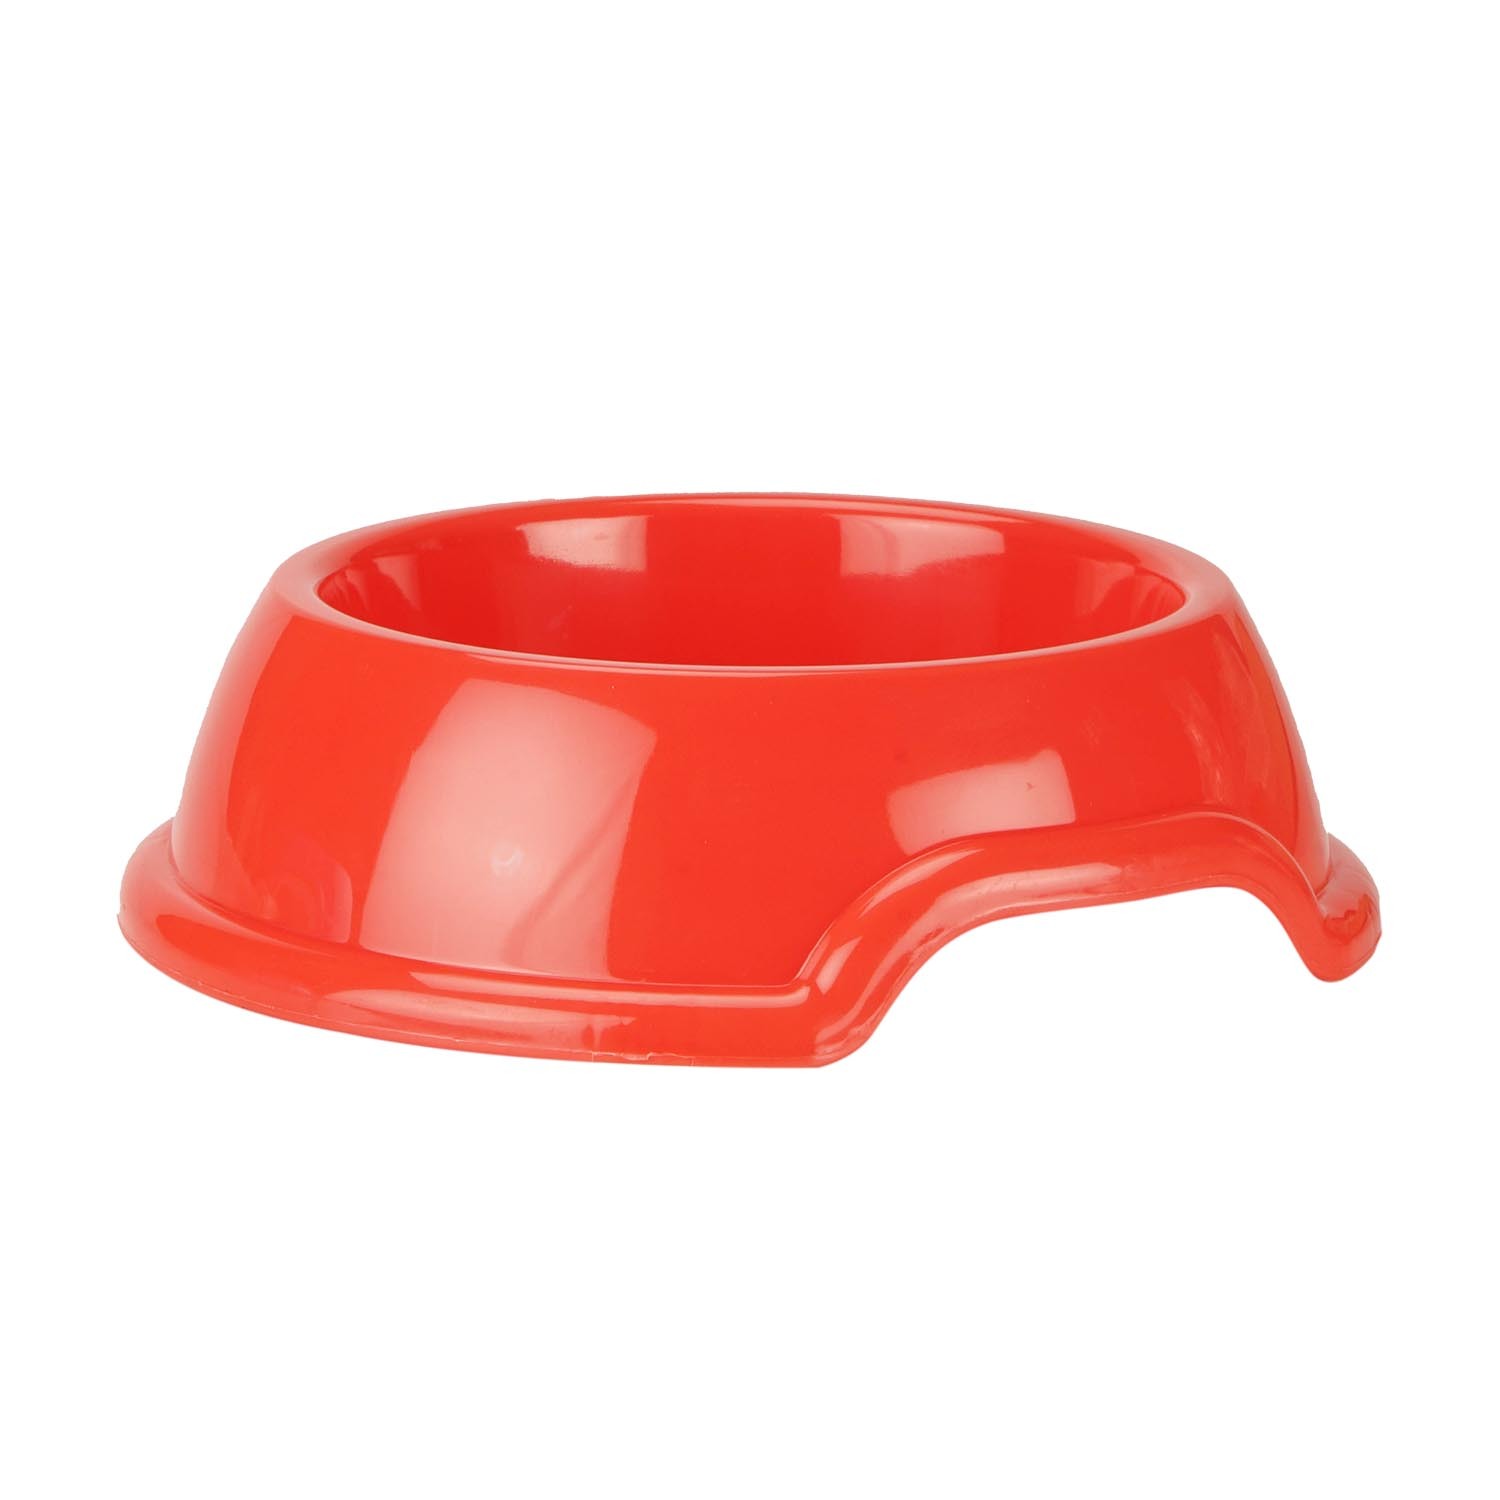 Plastic Pet Bowl - 22cm Image 1